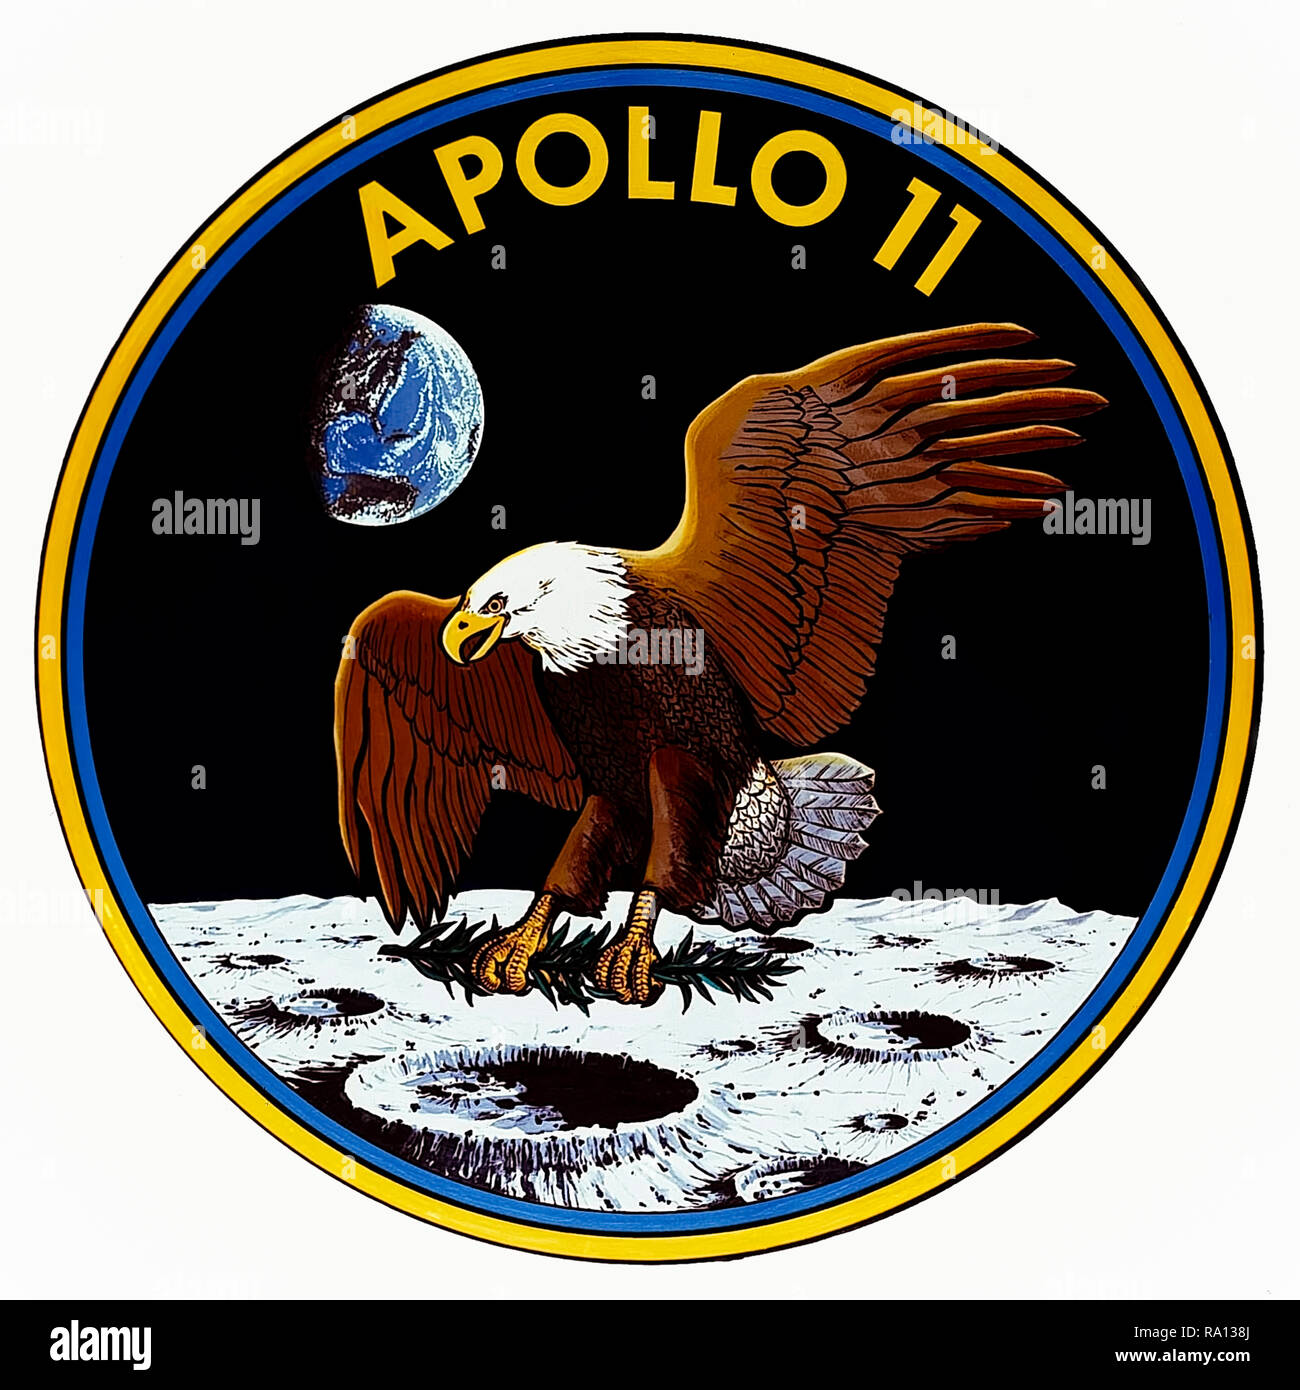 1969 Apollo 11 en vedette le logo de mission American Bald Eagle offrant une branche d'olivier à la surface lunaire comme un symbole de l'expédition pacifique. L'insigne a été conçu en collaboration permettra l'entrée de l'astronaute Neil Armstrong, Buzz Aldrin et Michael Collins. Banque D'Images